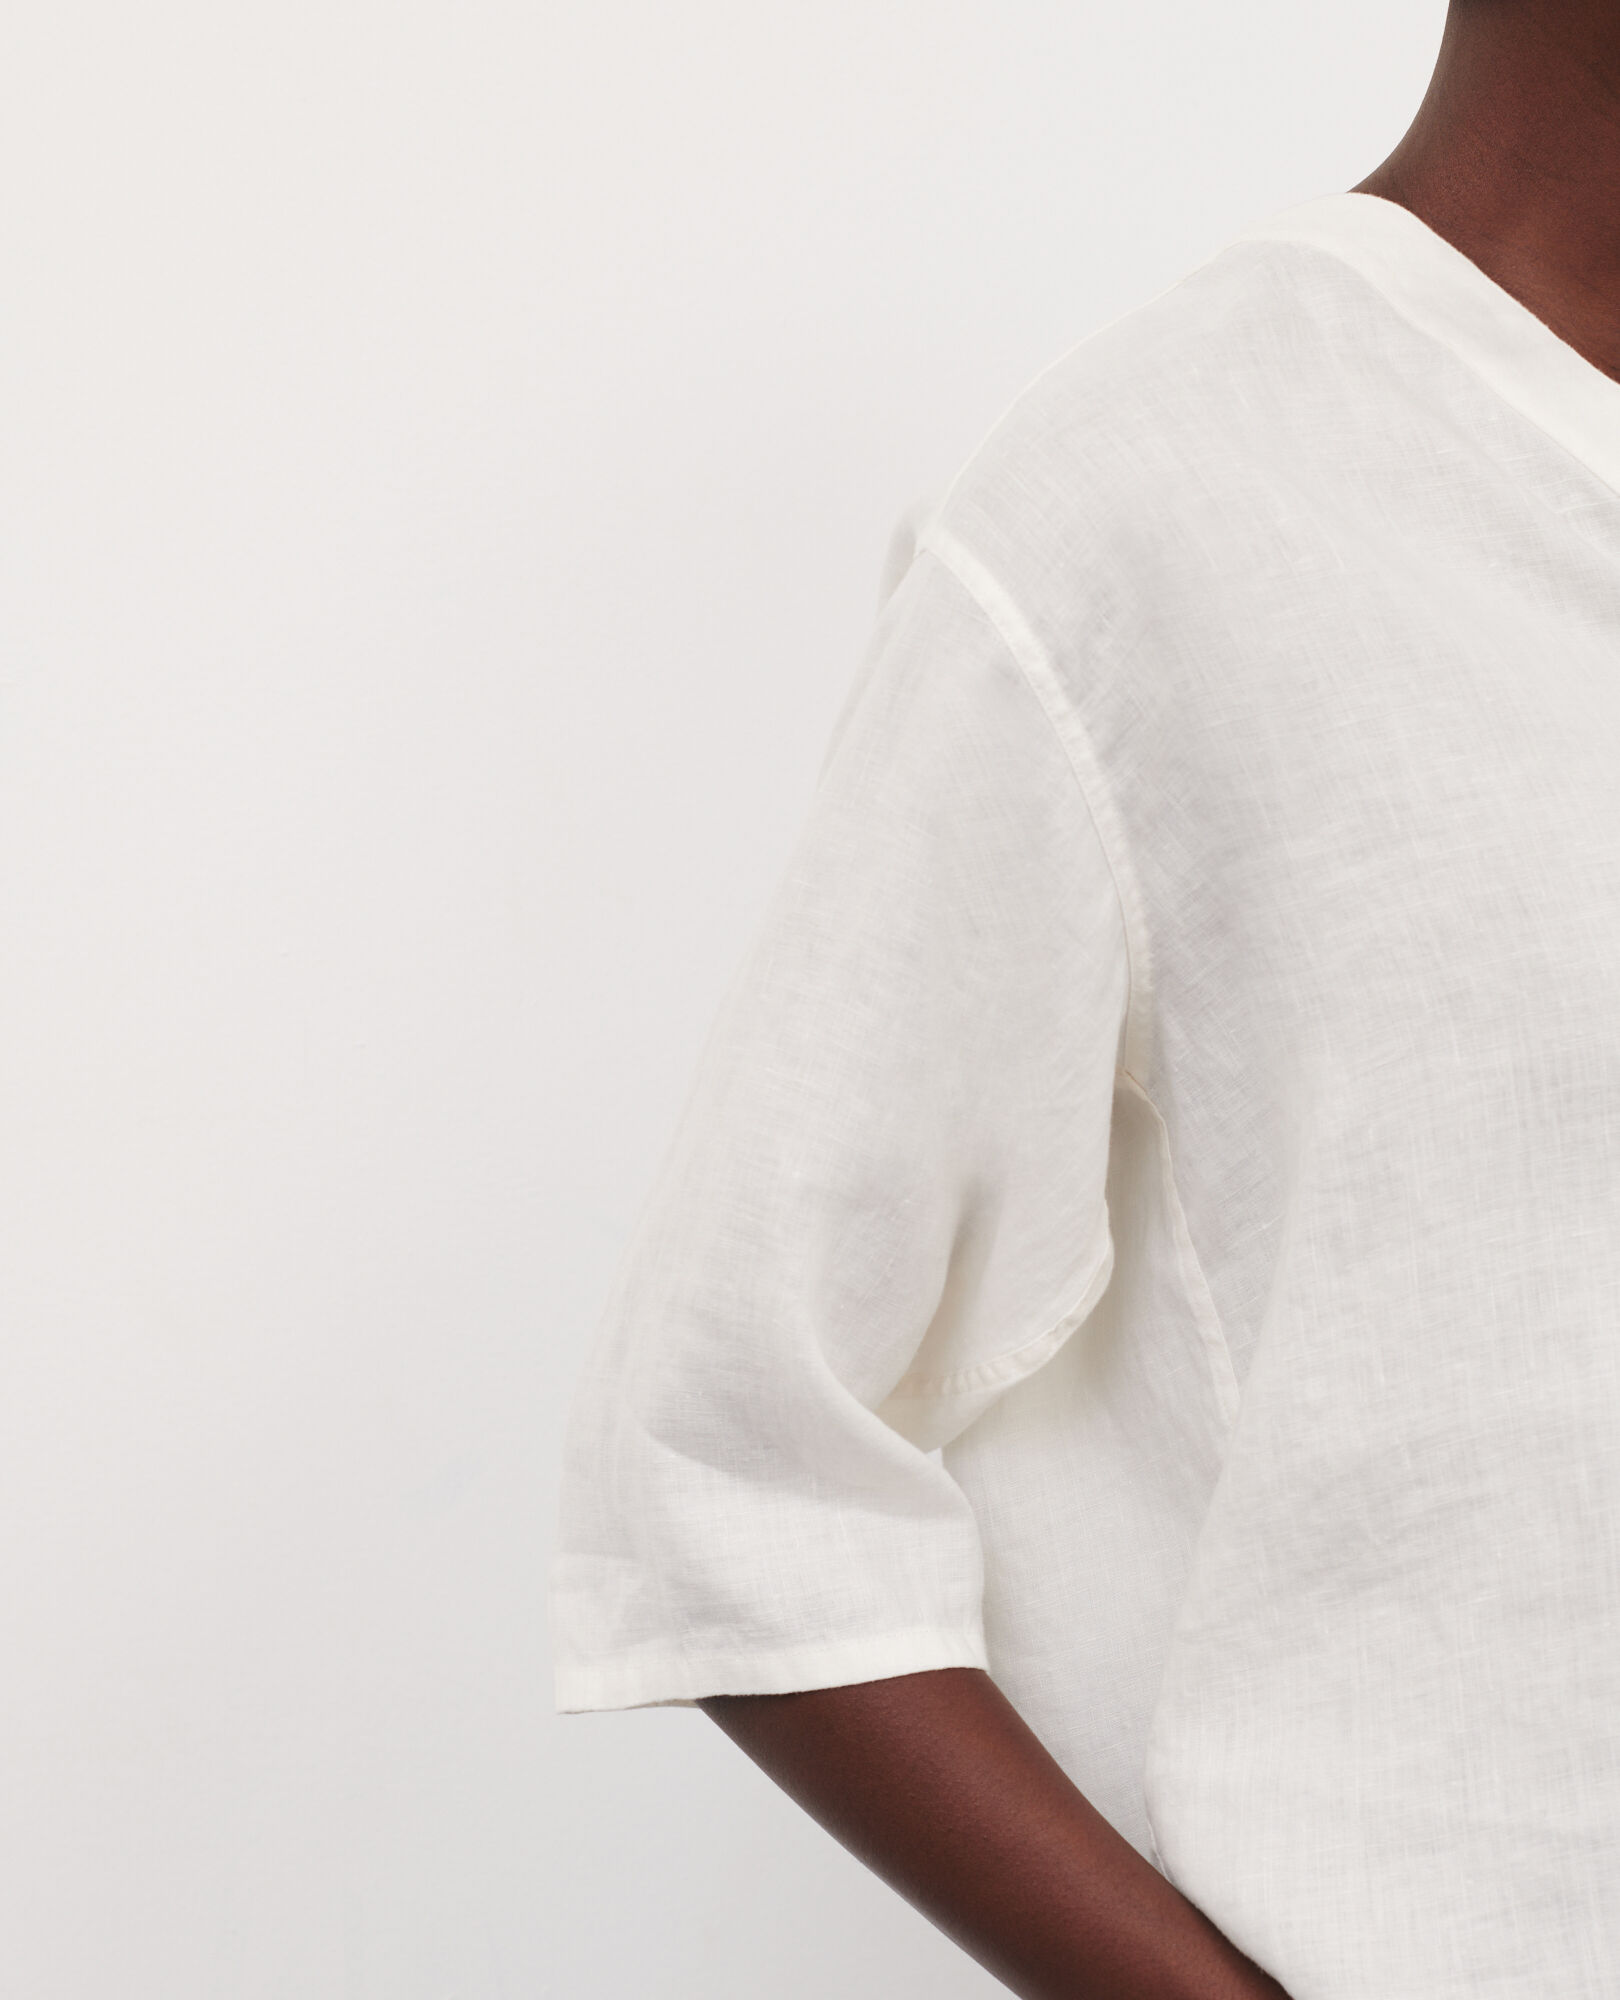 Tunesische Bluse aus Leinen 01 white 2sbl136f04